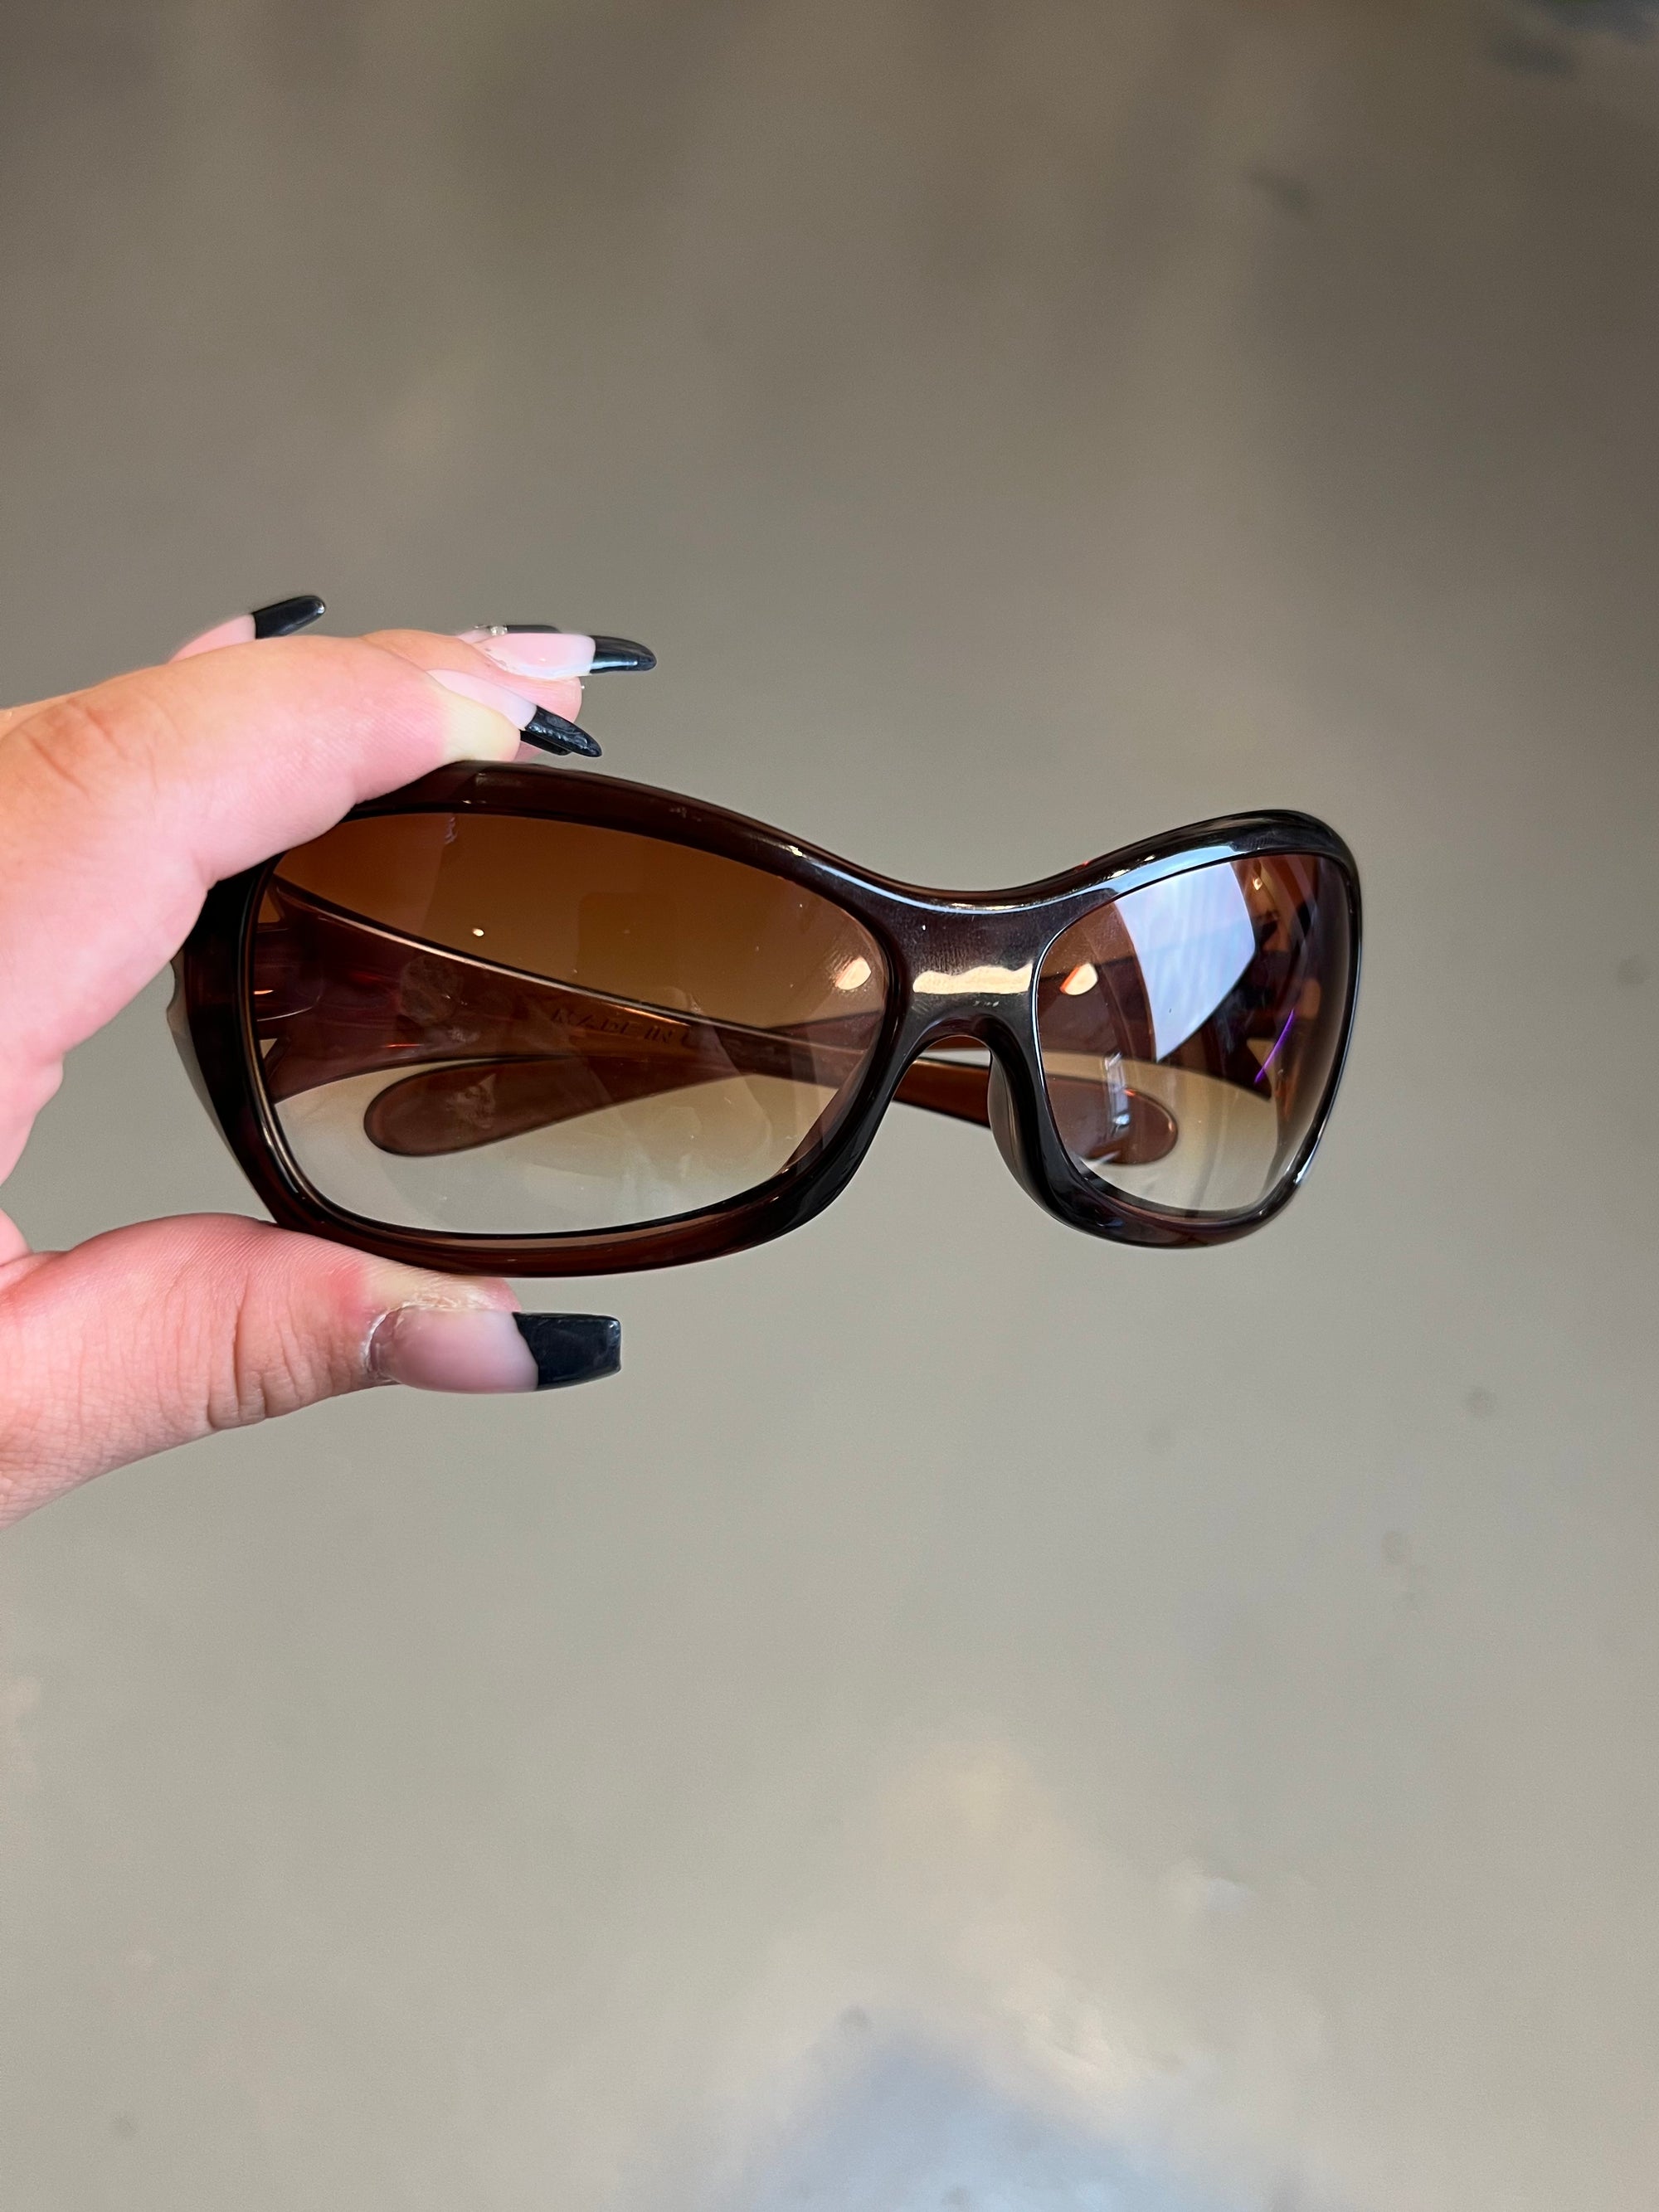 Produktbild von einer Braunen Oakley Sonnenbrille vor einer Grauen Wand